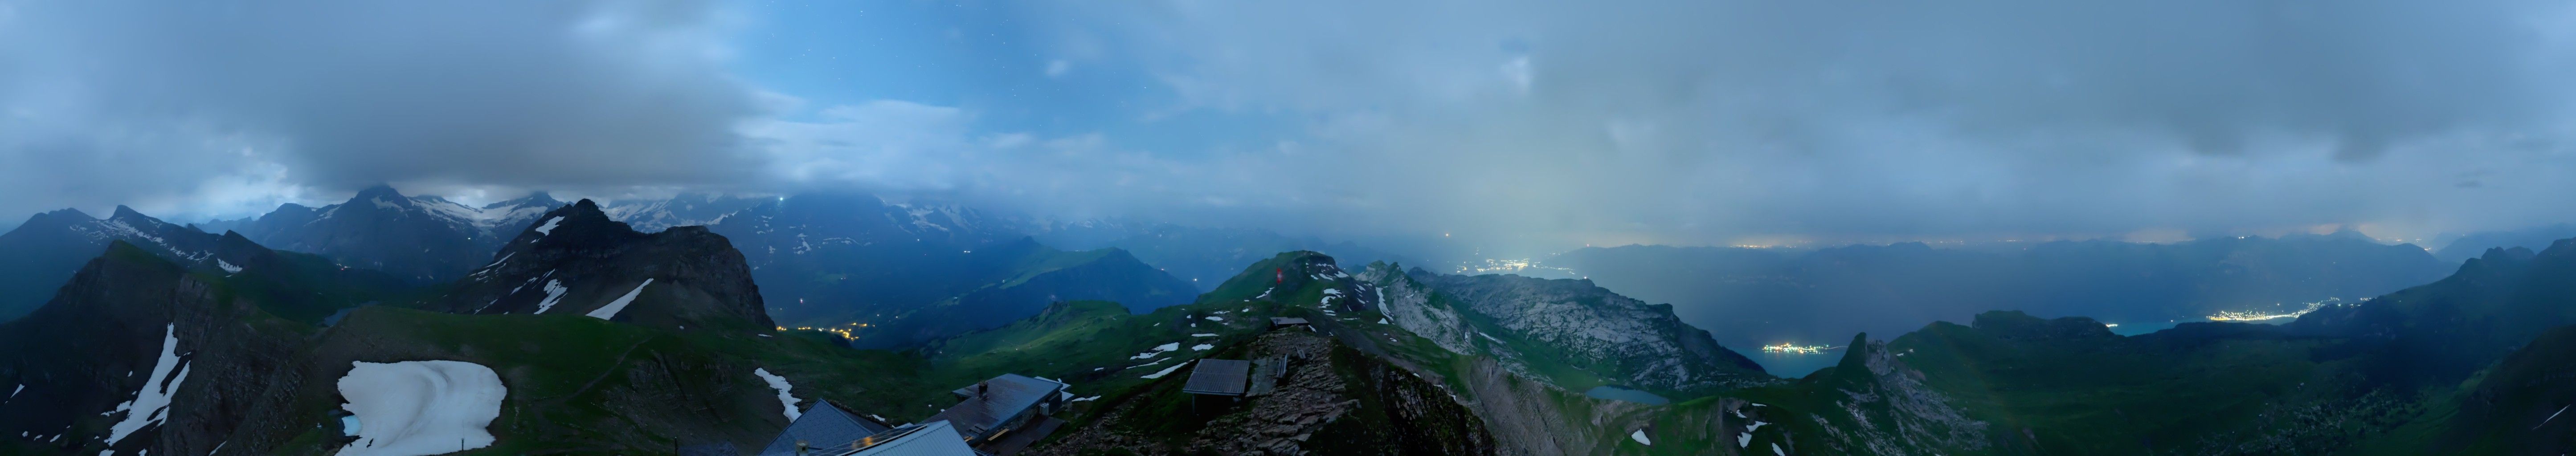 Grindelwald: Faulhorn Solar